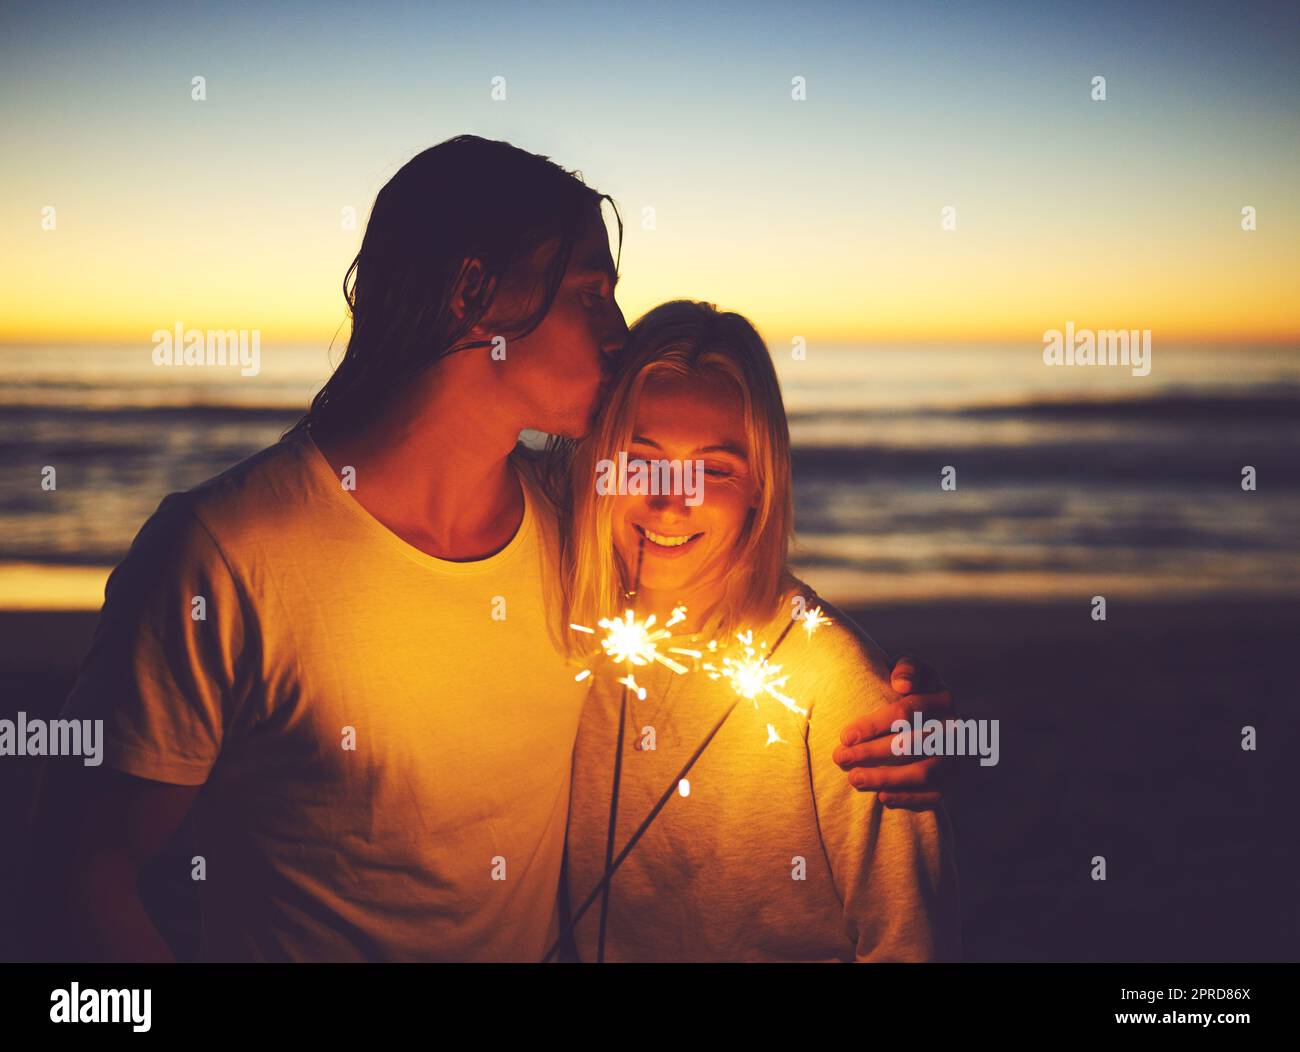 Chaque moment est rendu glorieux par la lumière de l'amour. Un jeune couple jouant avec des spameurs sur la plage la nuit. Banque D'Images